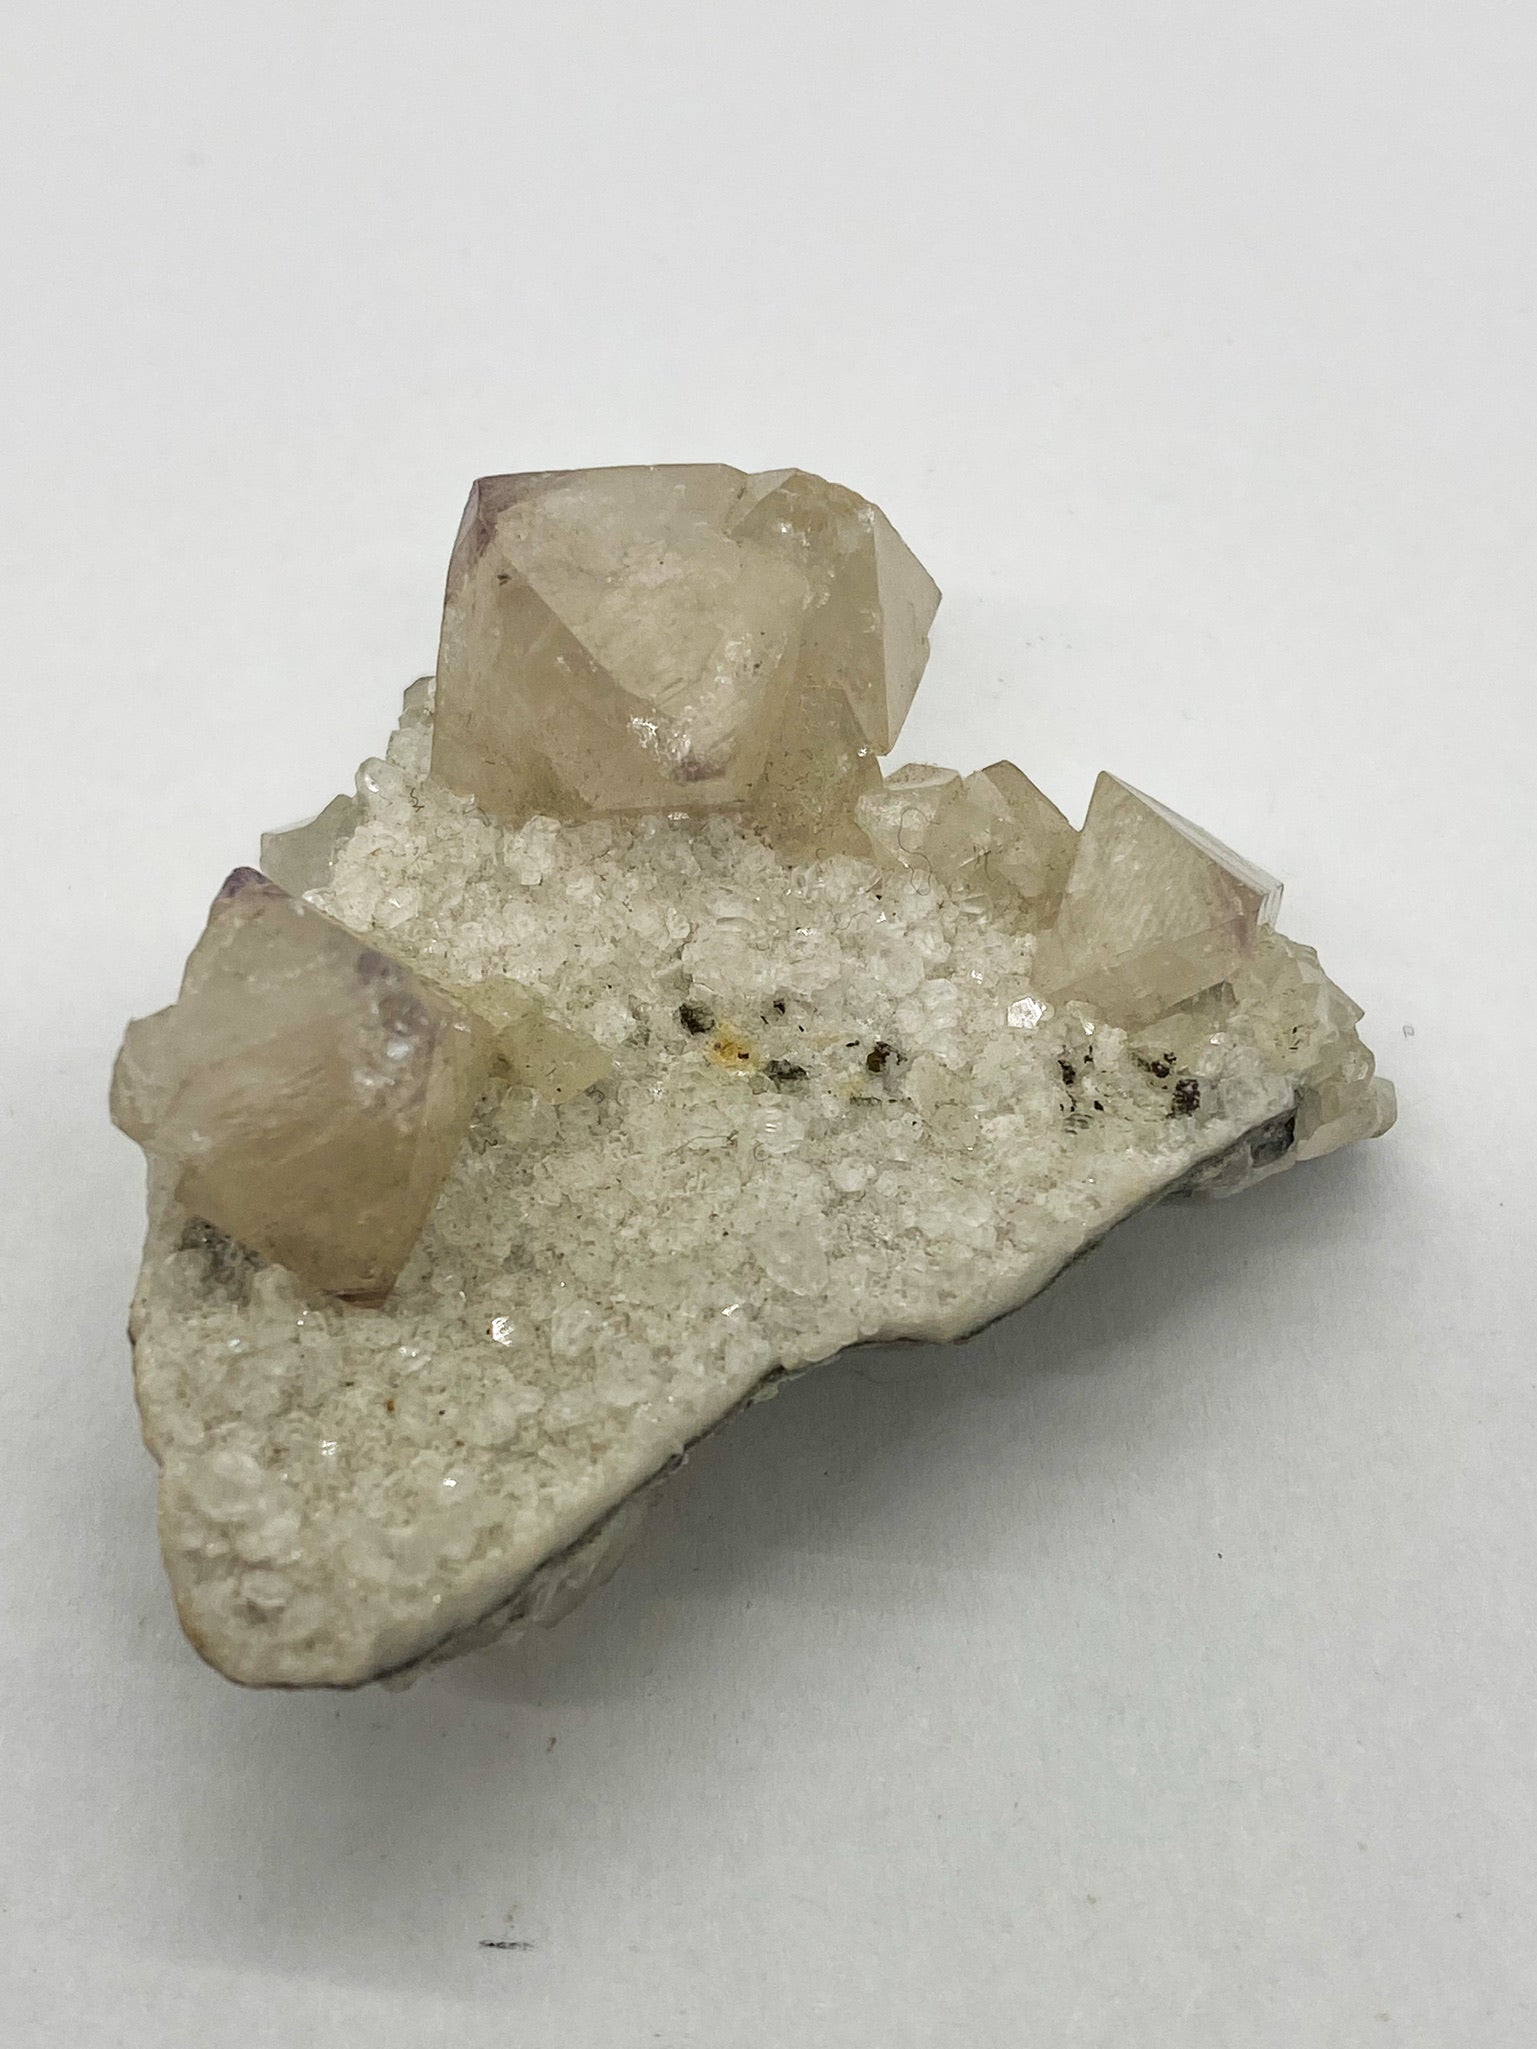 Octahedral Scheelite with Cube Fluorite